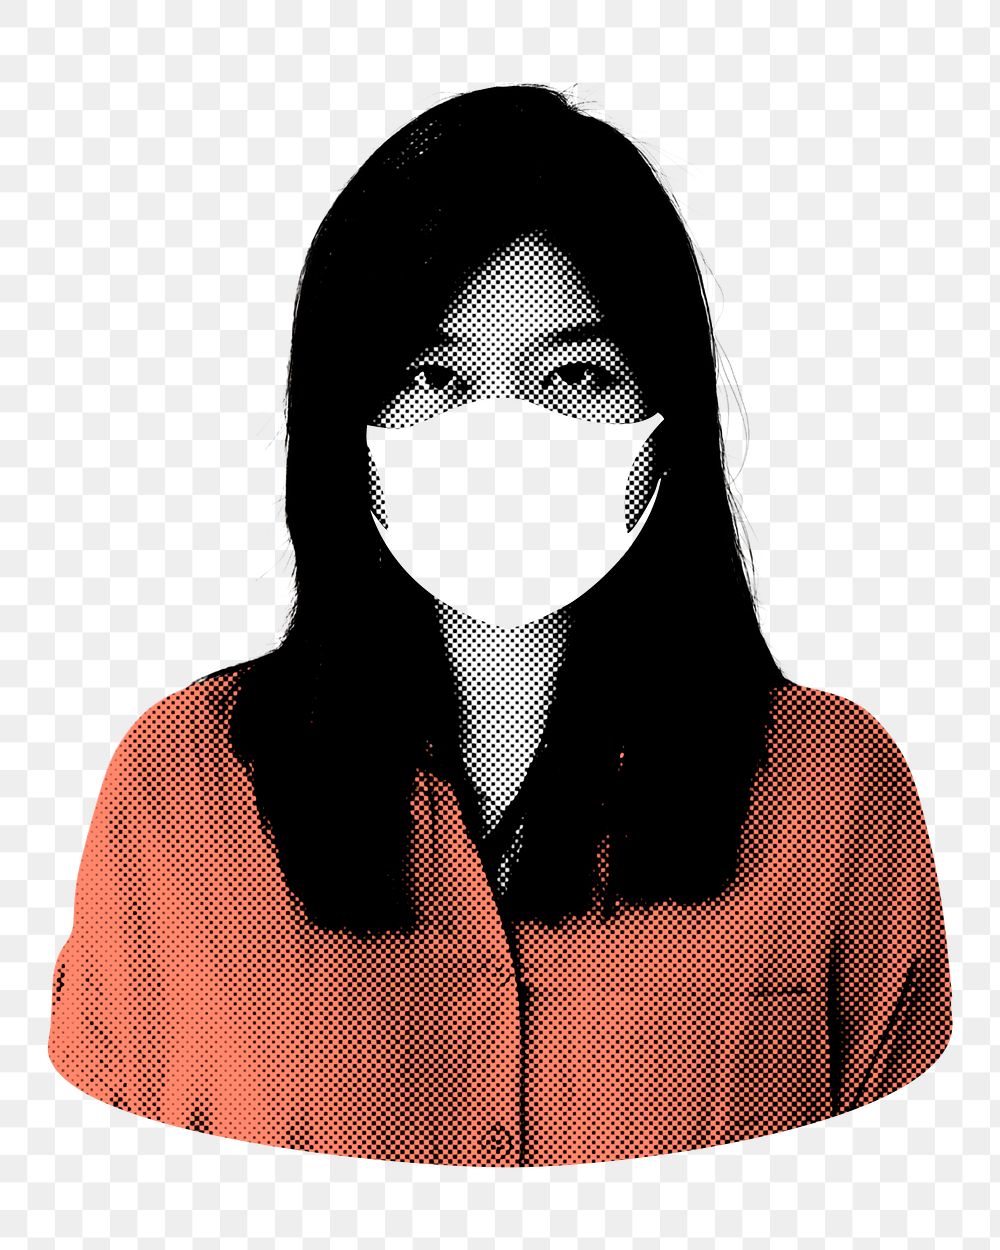 Face mask png, transparent background